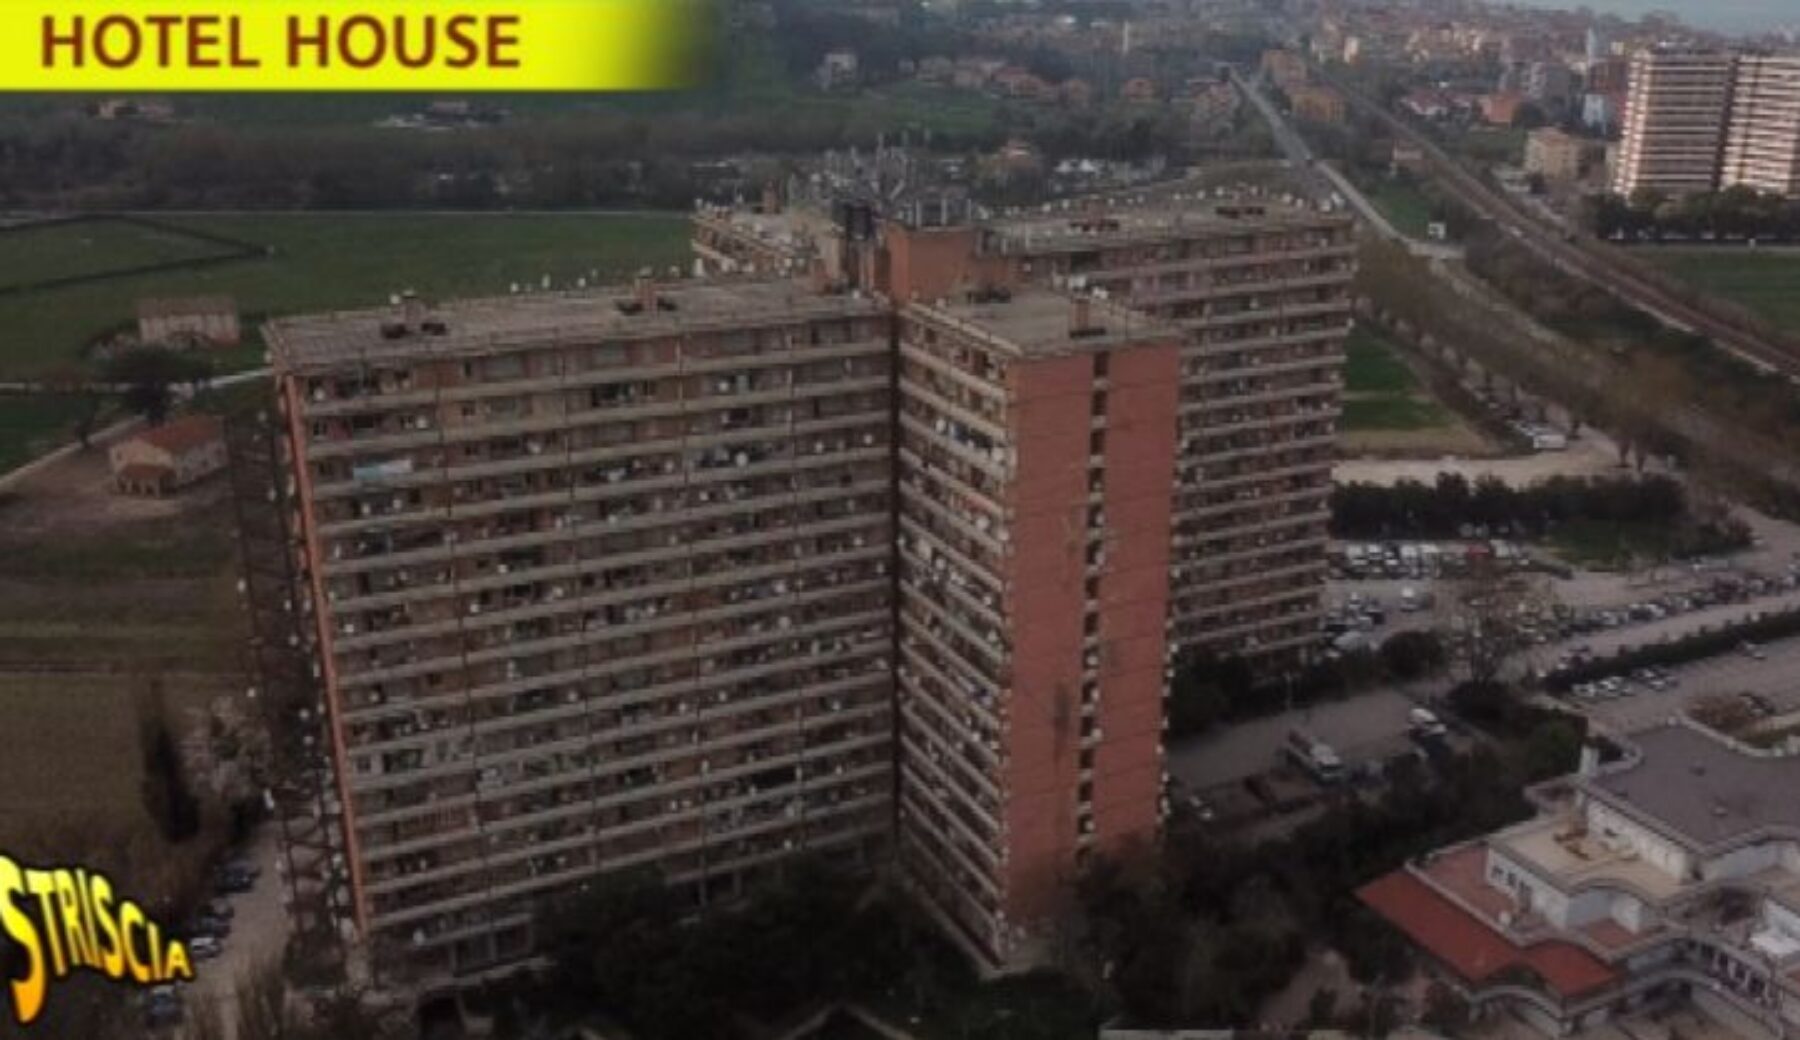 A Striscia la notizia nessuna legge, poca igiene e zero sicurezza: Rajae Bezzaz entra all’Hotel House di Porto Recanati, il ghetto dietro al “pozzo degli orrori”